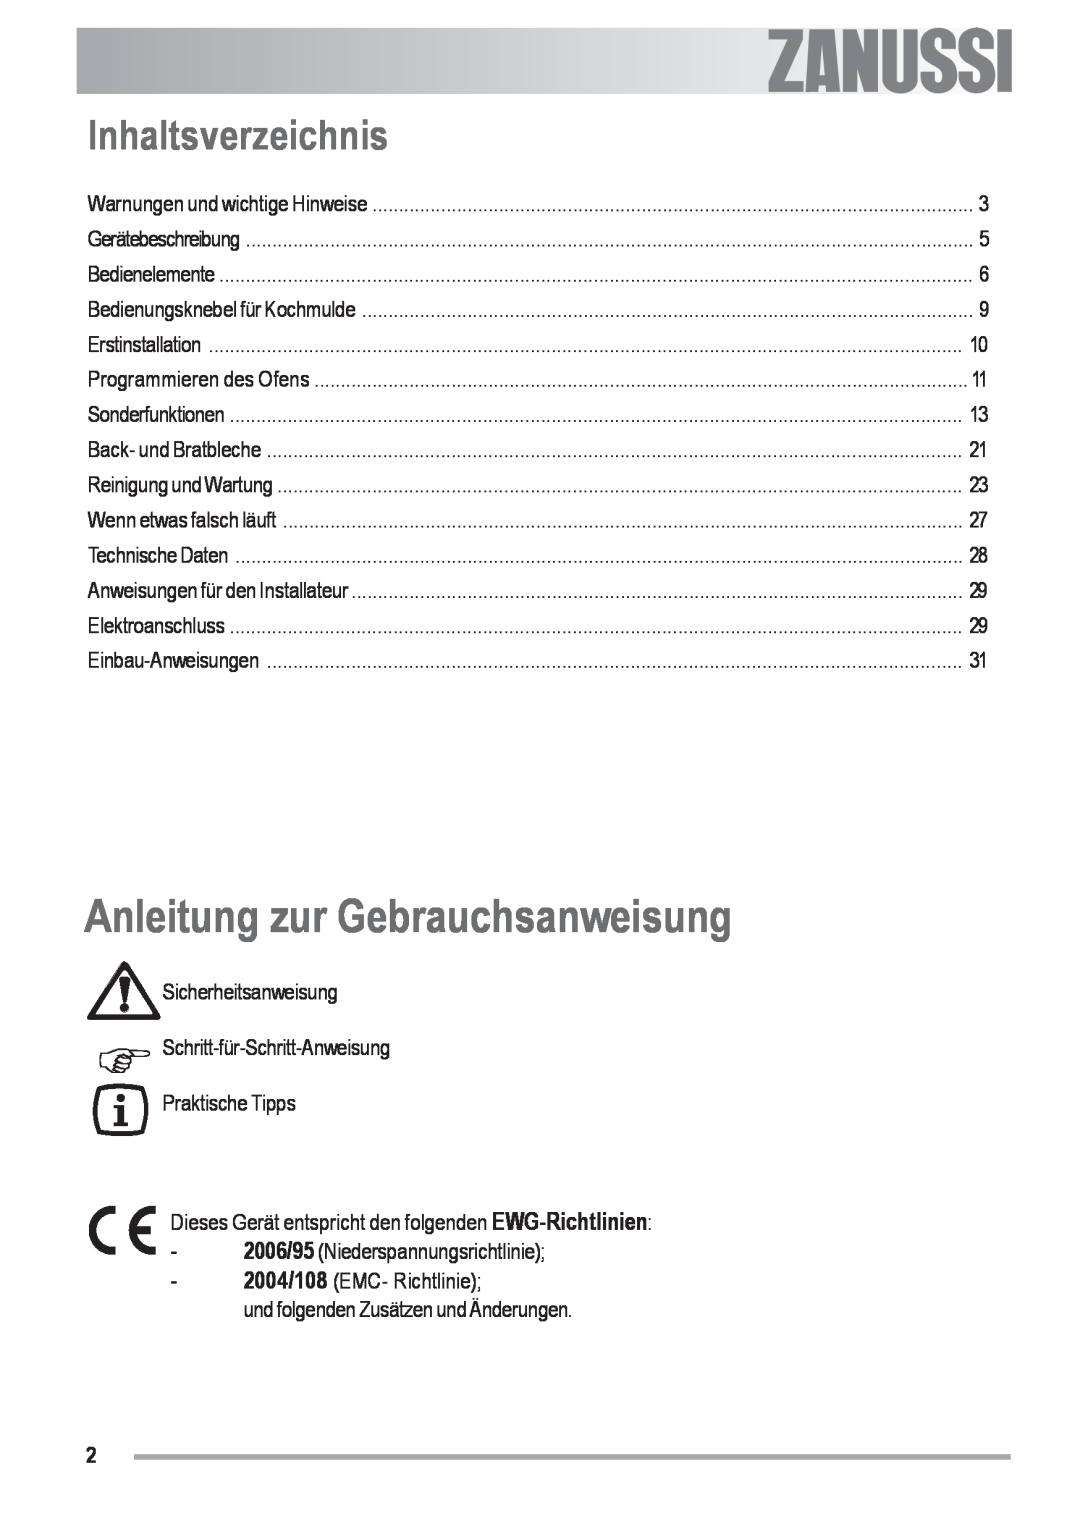 Zanussi ZOU 592 user manual Anleitung zur Gebrauchsanweisung, Inhaltsverzeichnis, Electrolux 